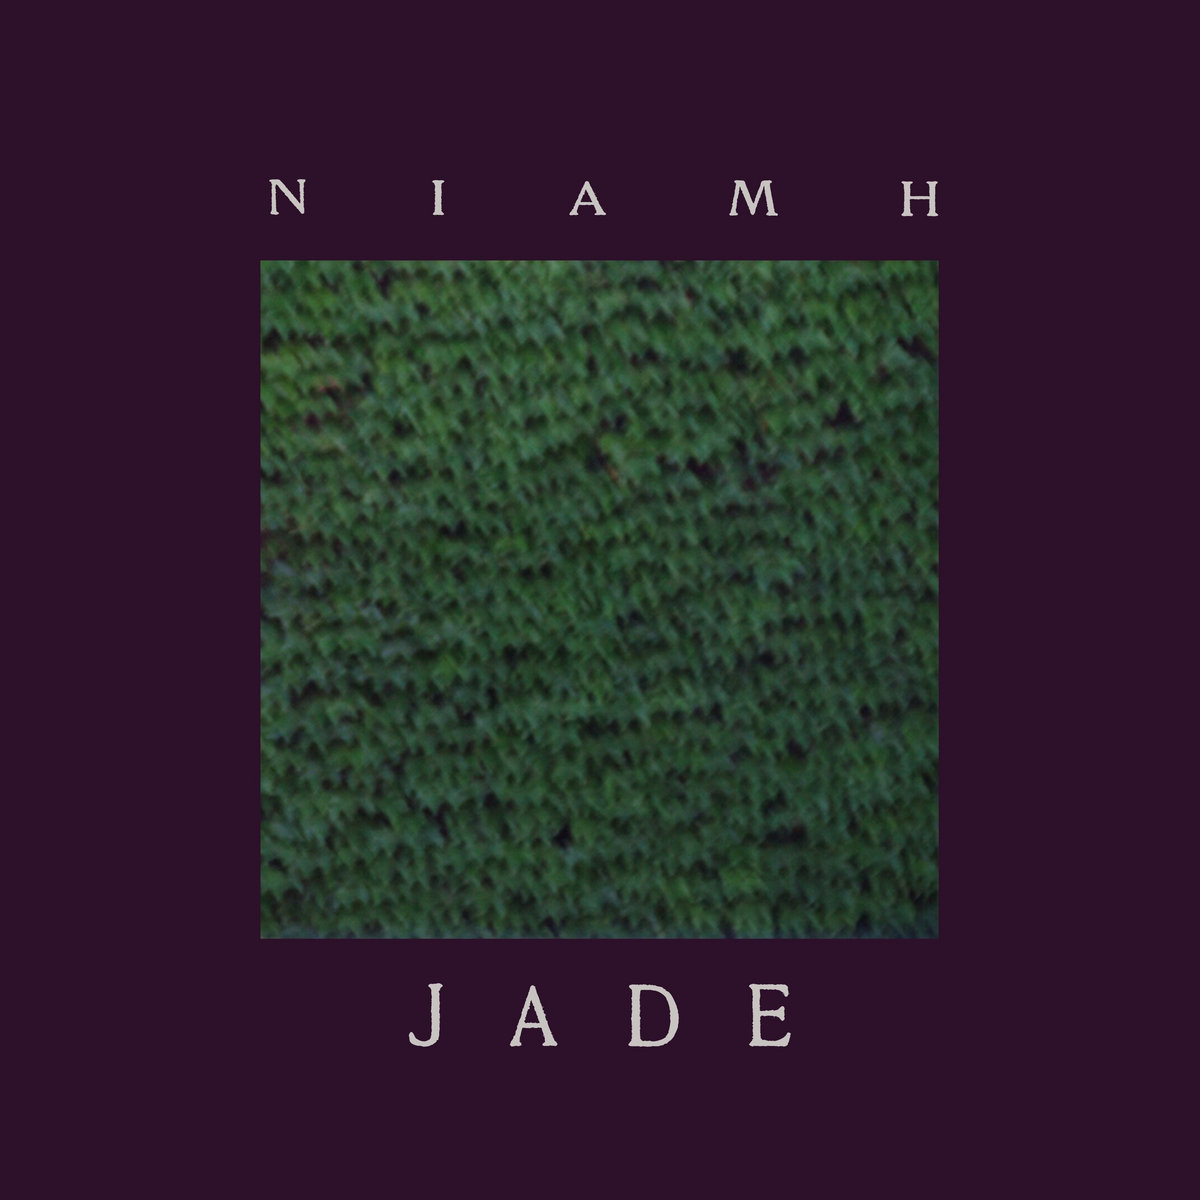 Jade by Niamh